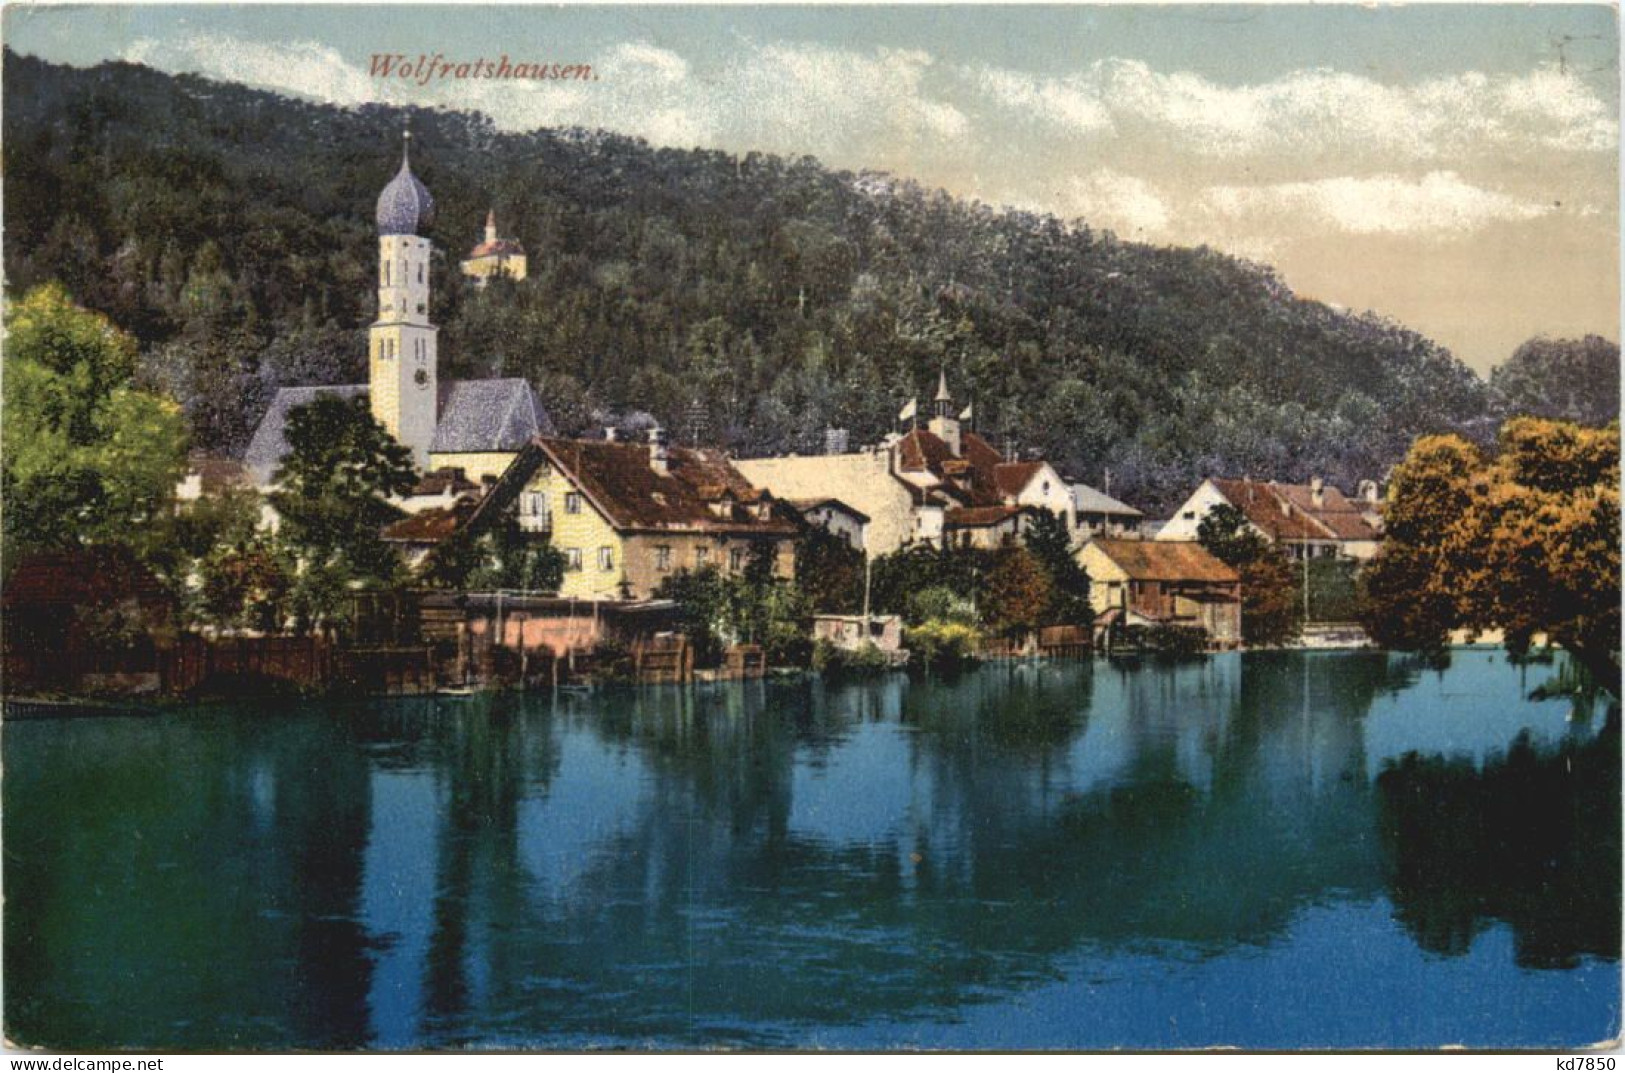 Wolfratshausen - Bad Toelz